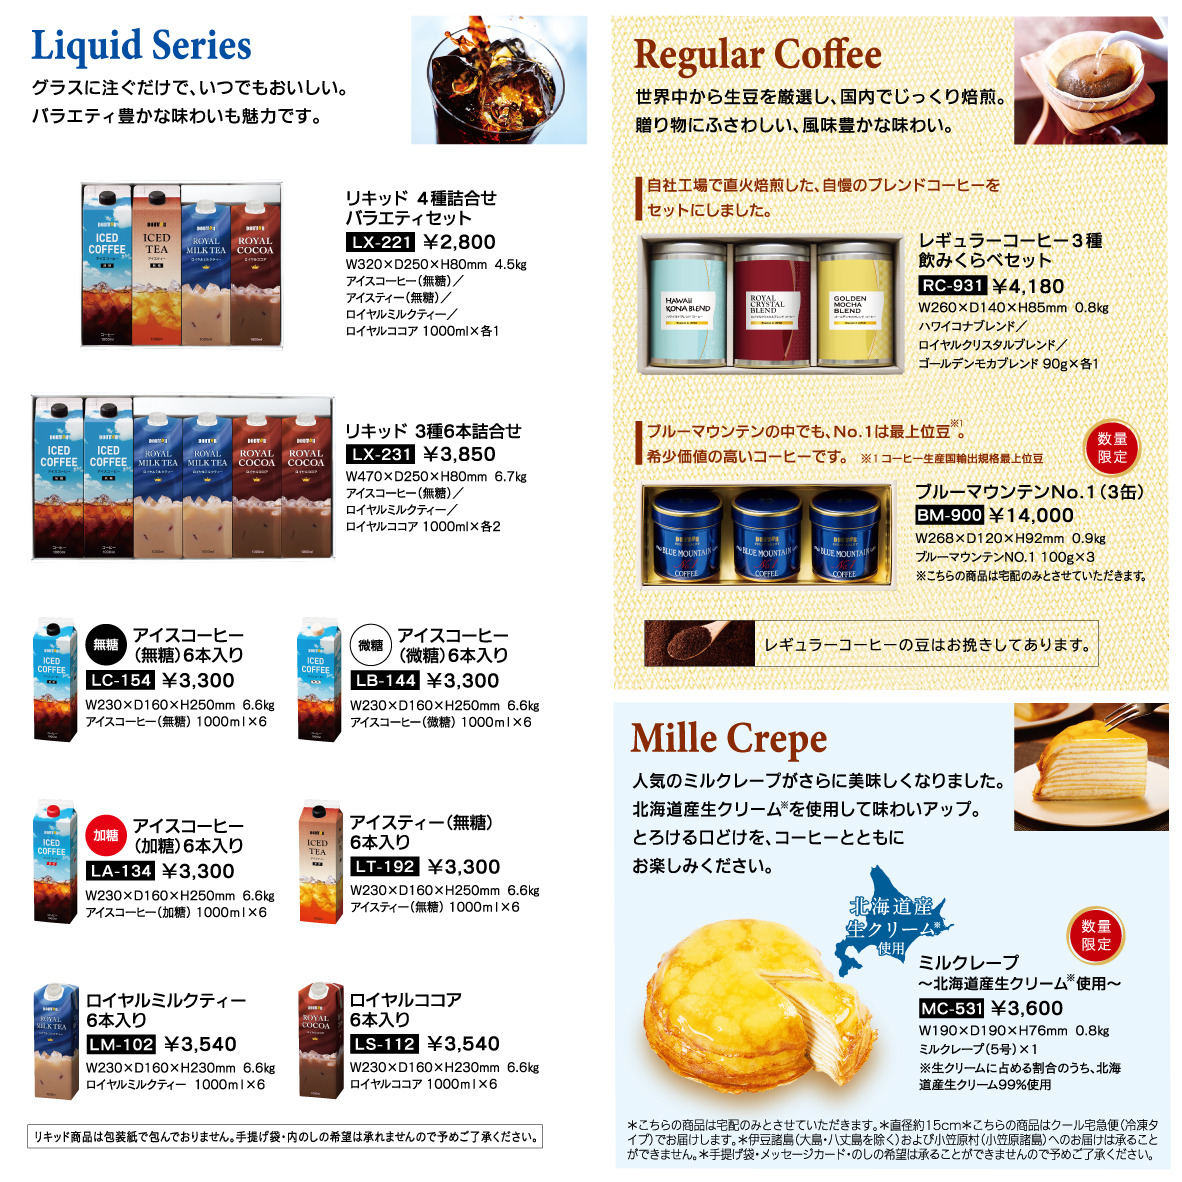 全日本送料無料 ドトールコーヒー オレンジケーキギフトセット 計17個 ケース入数 trumbullcampbell.com